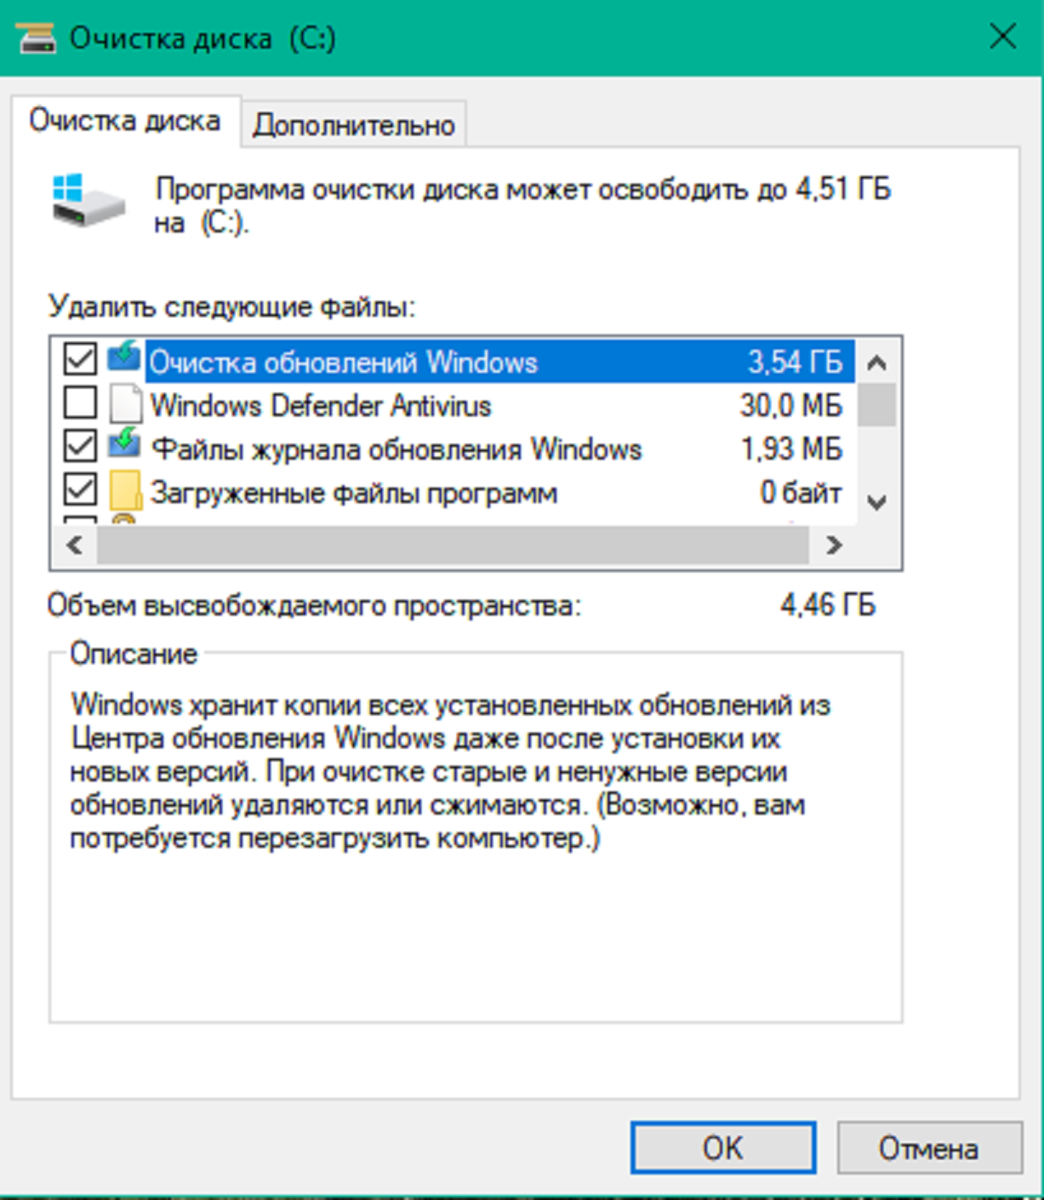 Очистка диска от ненужных файлов программы. Очистка диска виндовс 7. Команда для очистки диска с виндовс 7. Очистка жесткого диска Windows. Программы для очистки диска с от ненужных файлов Windows 7.